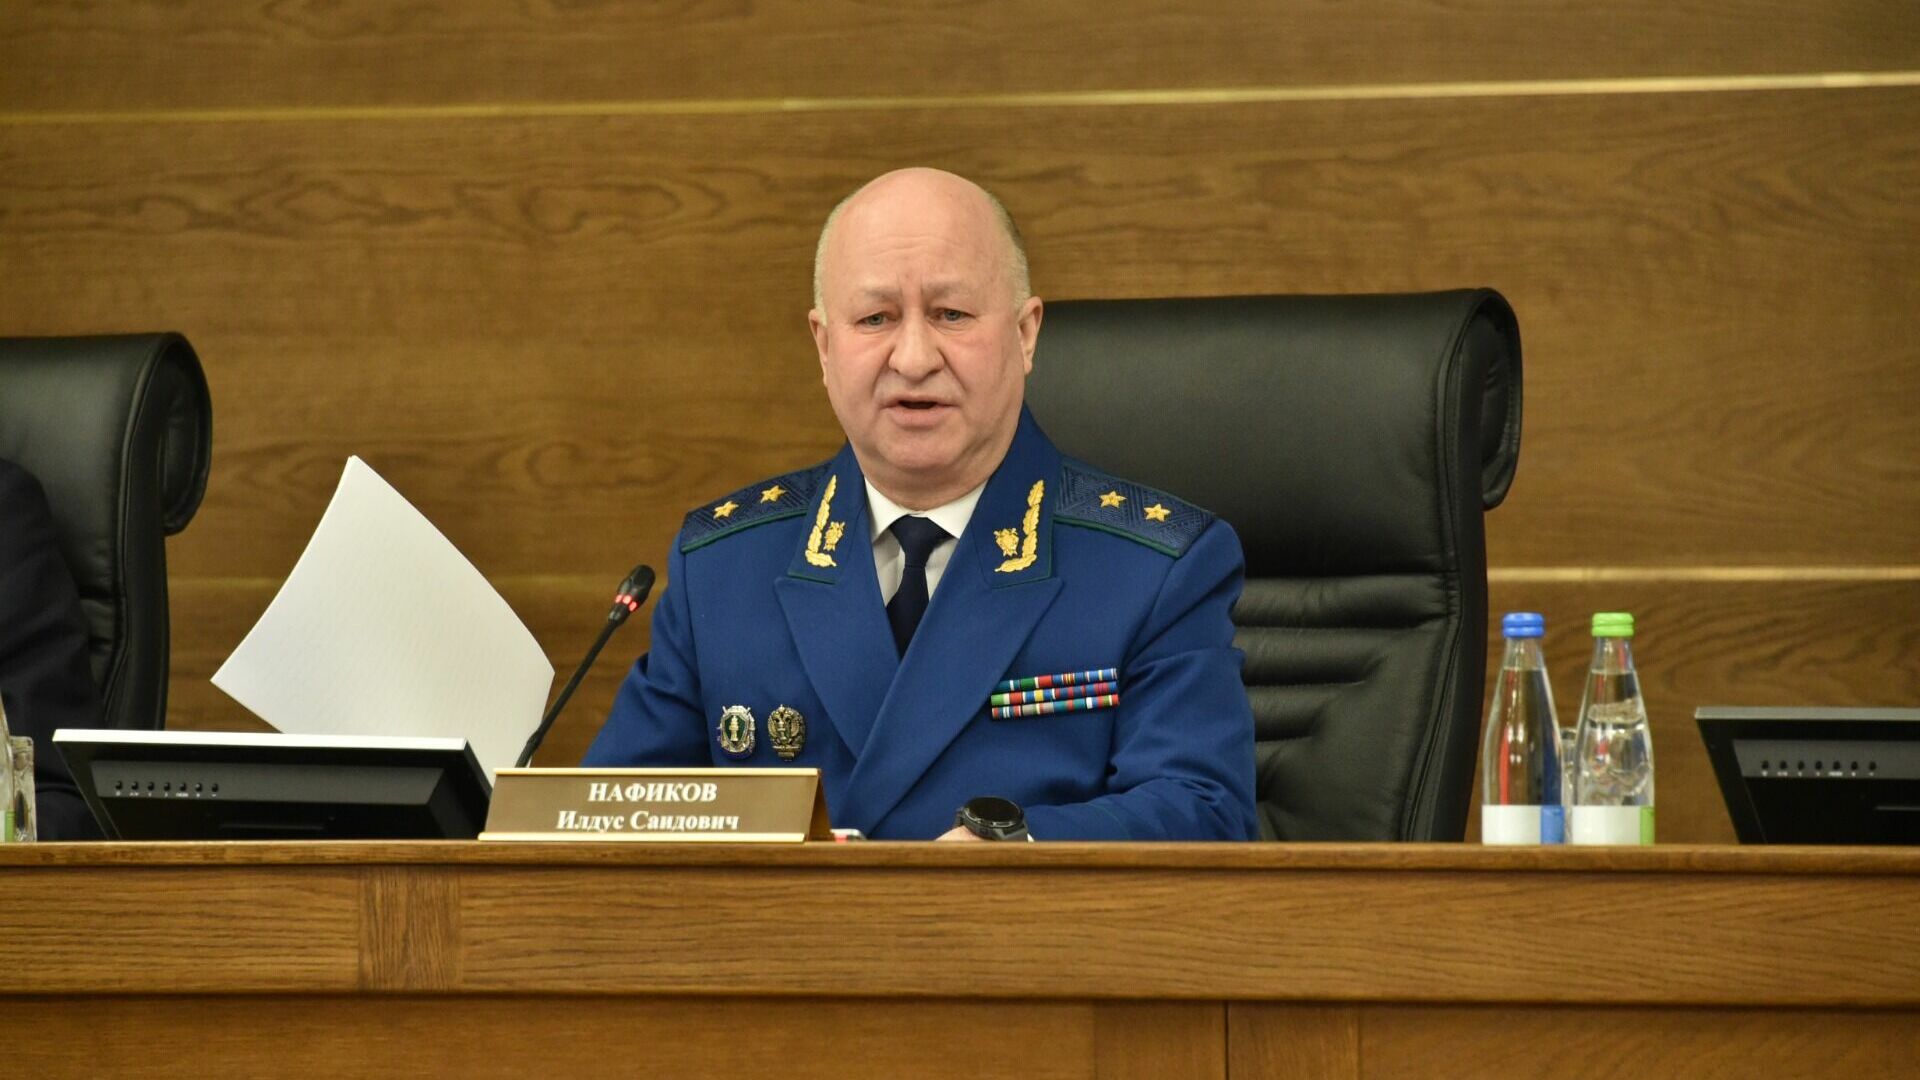 Прокурор Татарстана Нафиков может возглавить надзорное ведомство в Марий Эл — СМИ